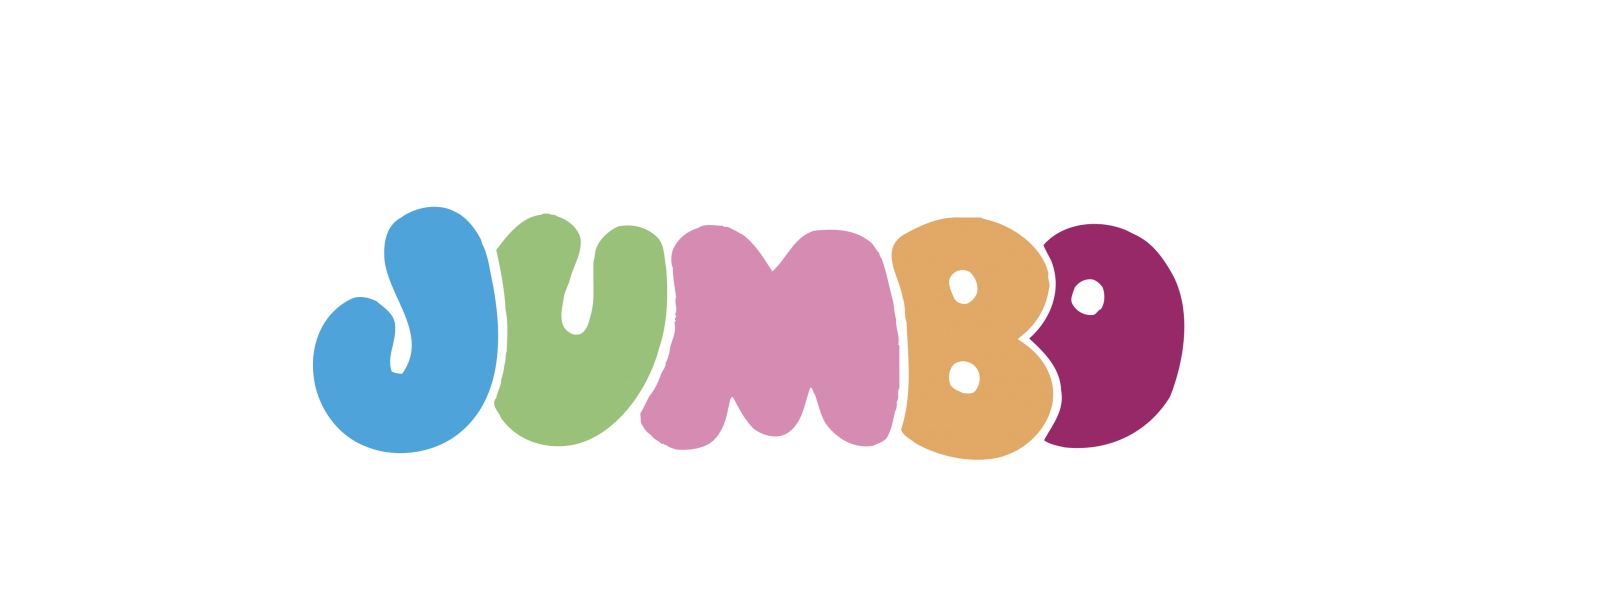 jumbo-3-logo-png-transparent-min